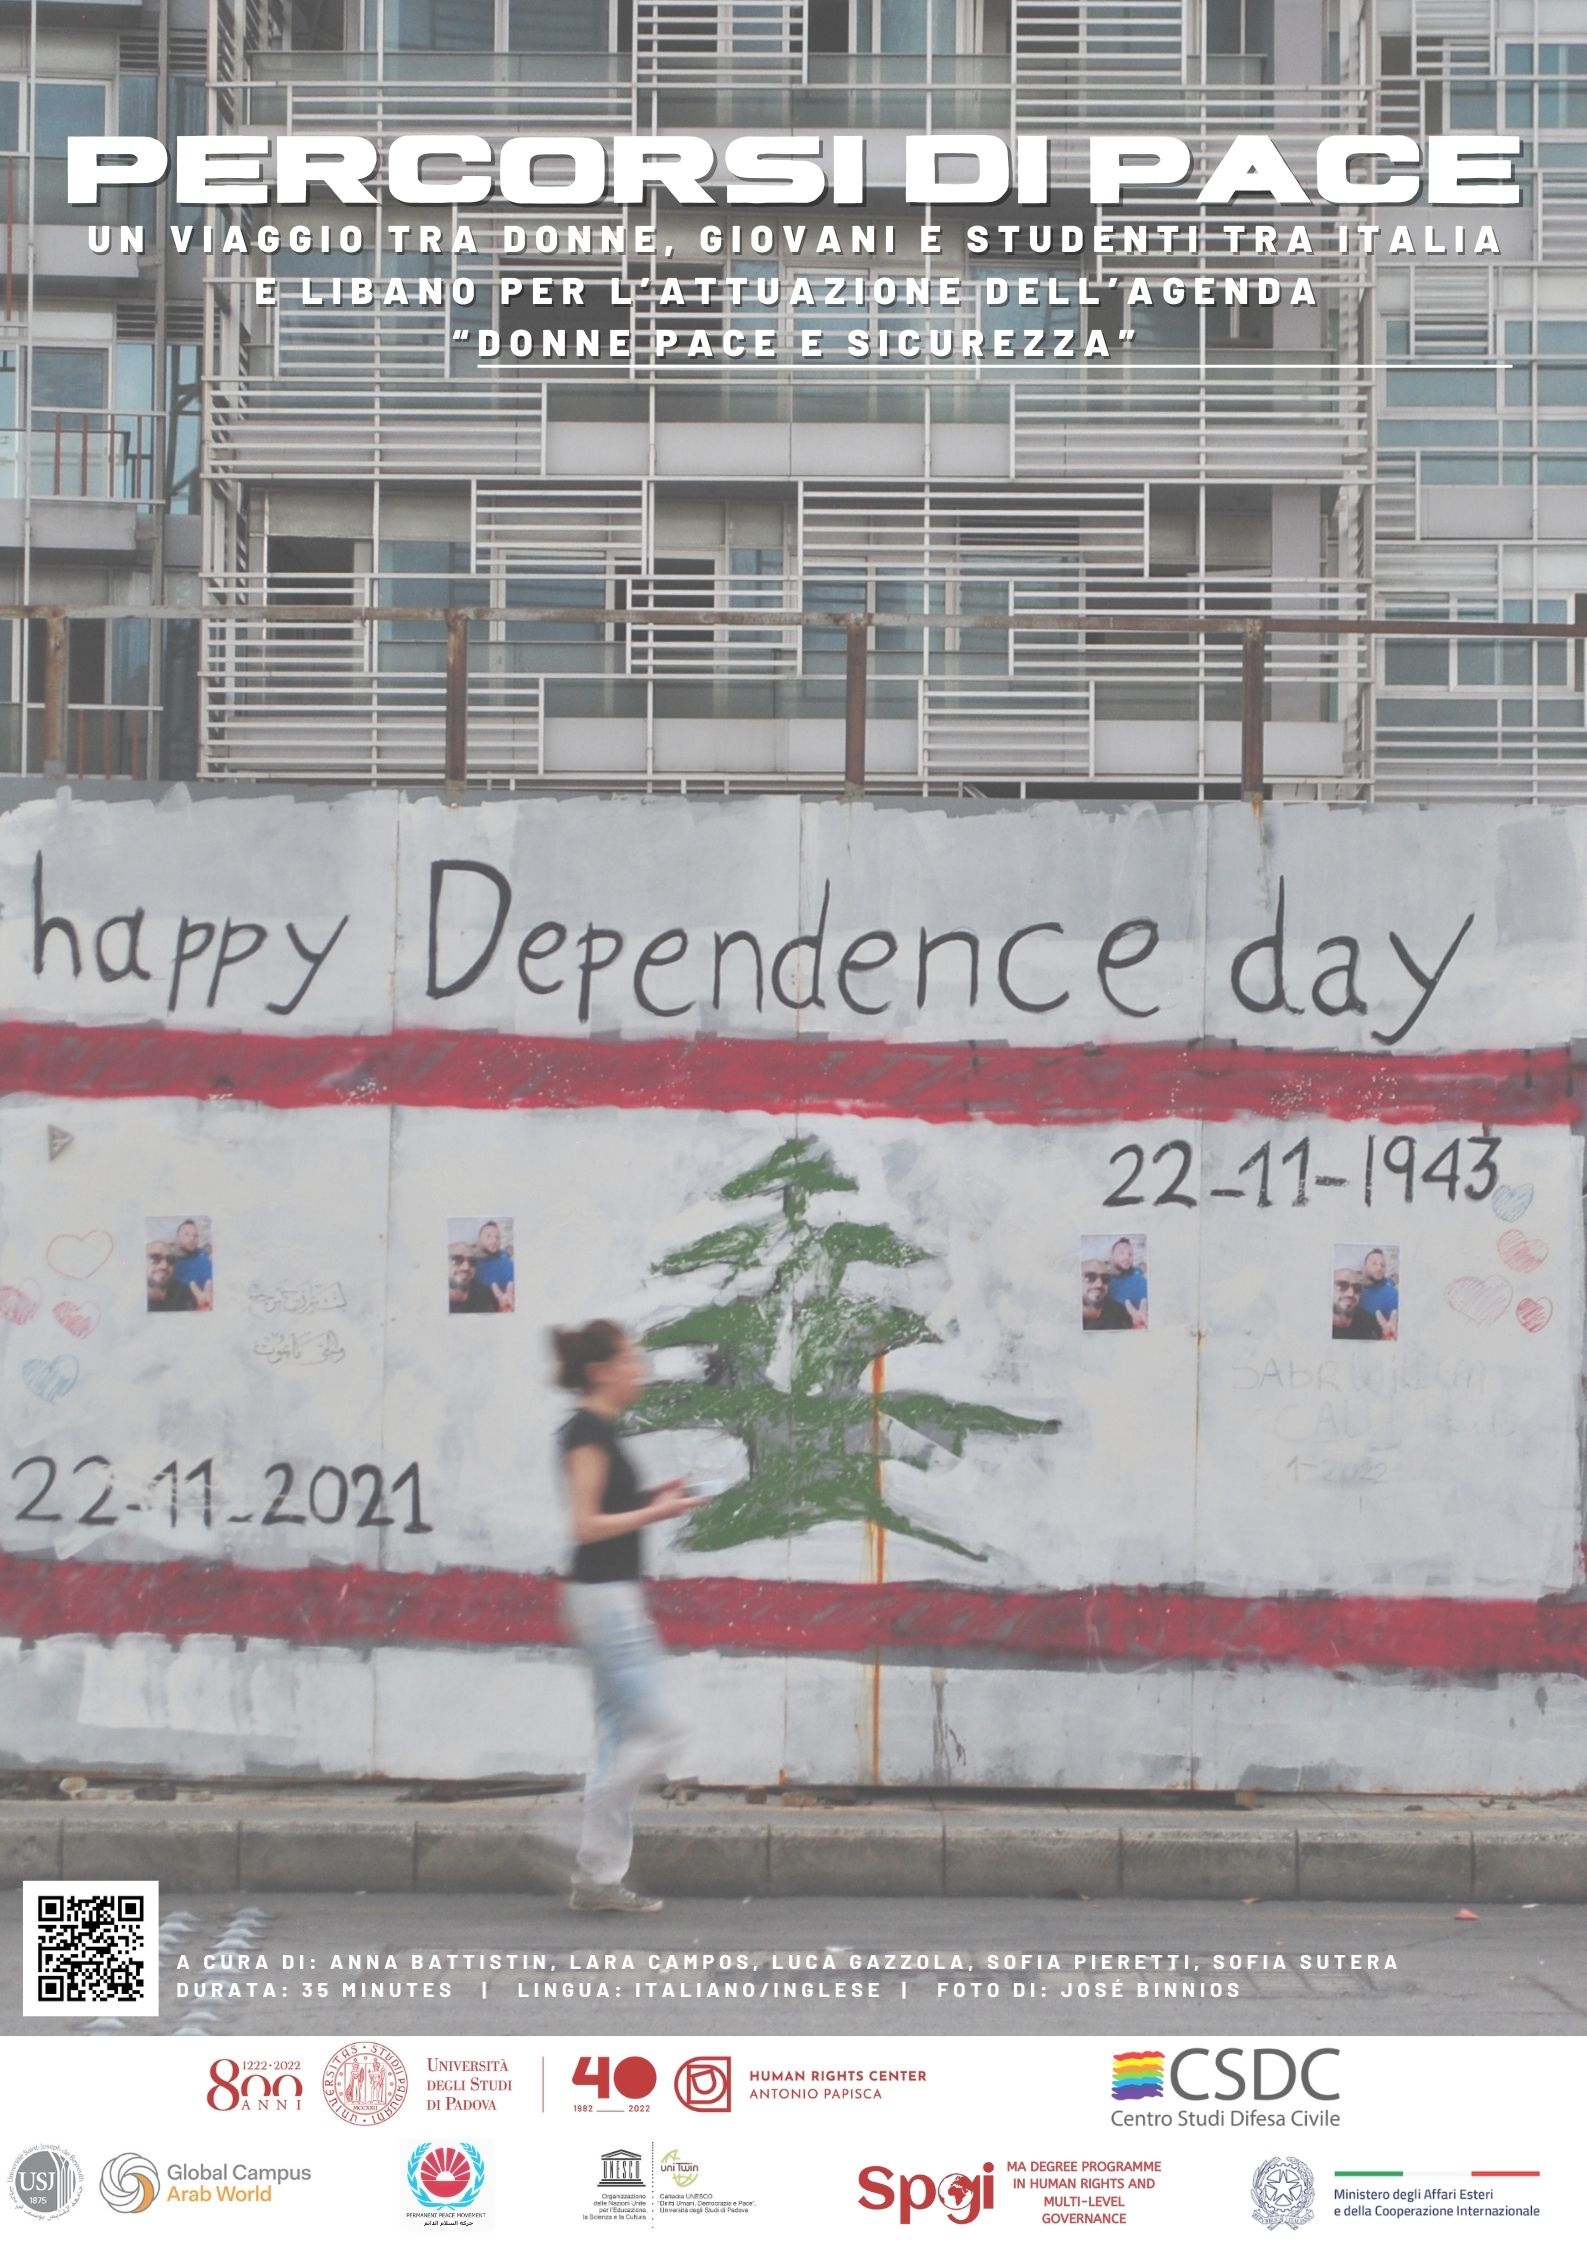 Locandina del documentari Percorsi di pace", una donna cammina di fronte a un graffito con la bandiera libanese e la scritta "happy dependence day"